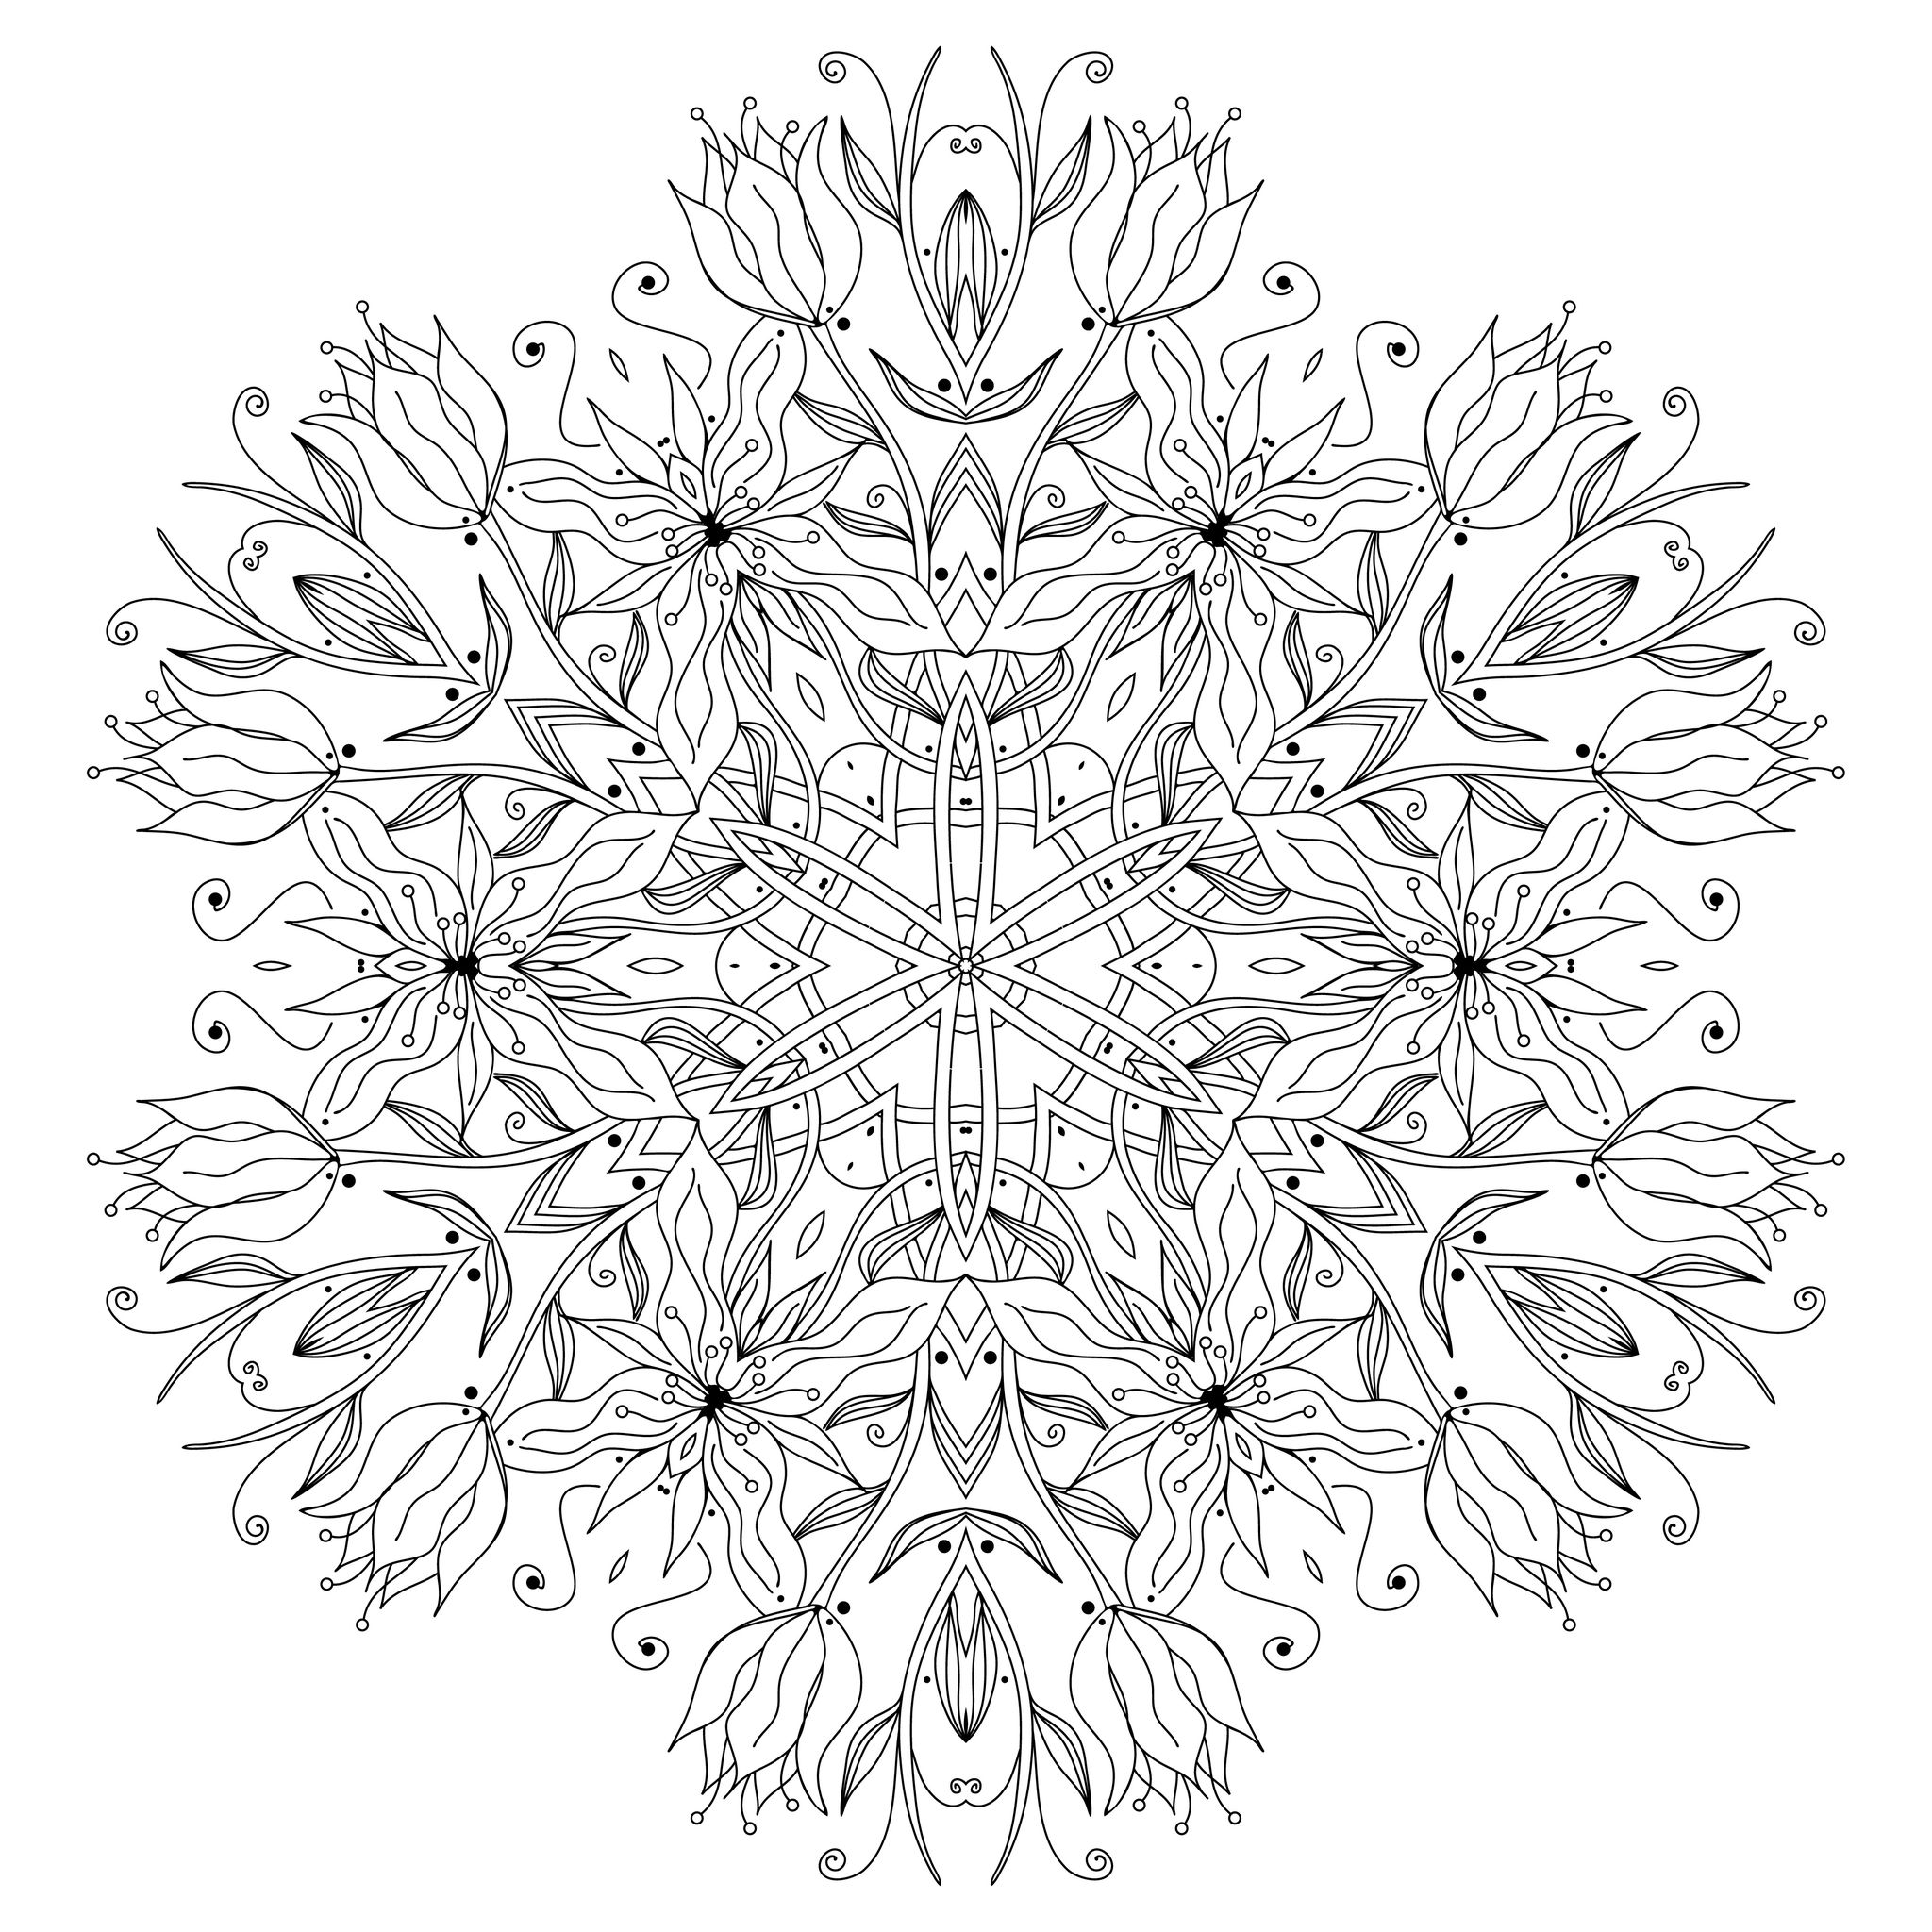 Desenhos grátis para colorir de Mandalas para imprimir e colorir, Artista : Epic22   Fonte : 123rf